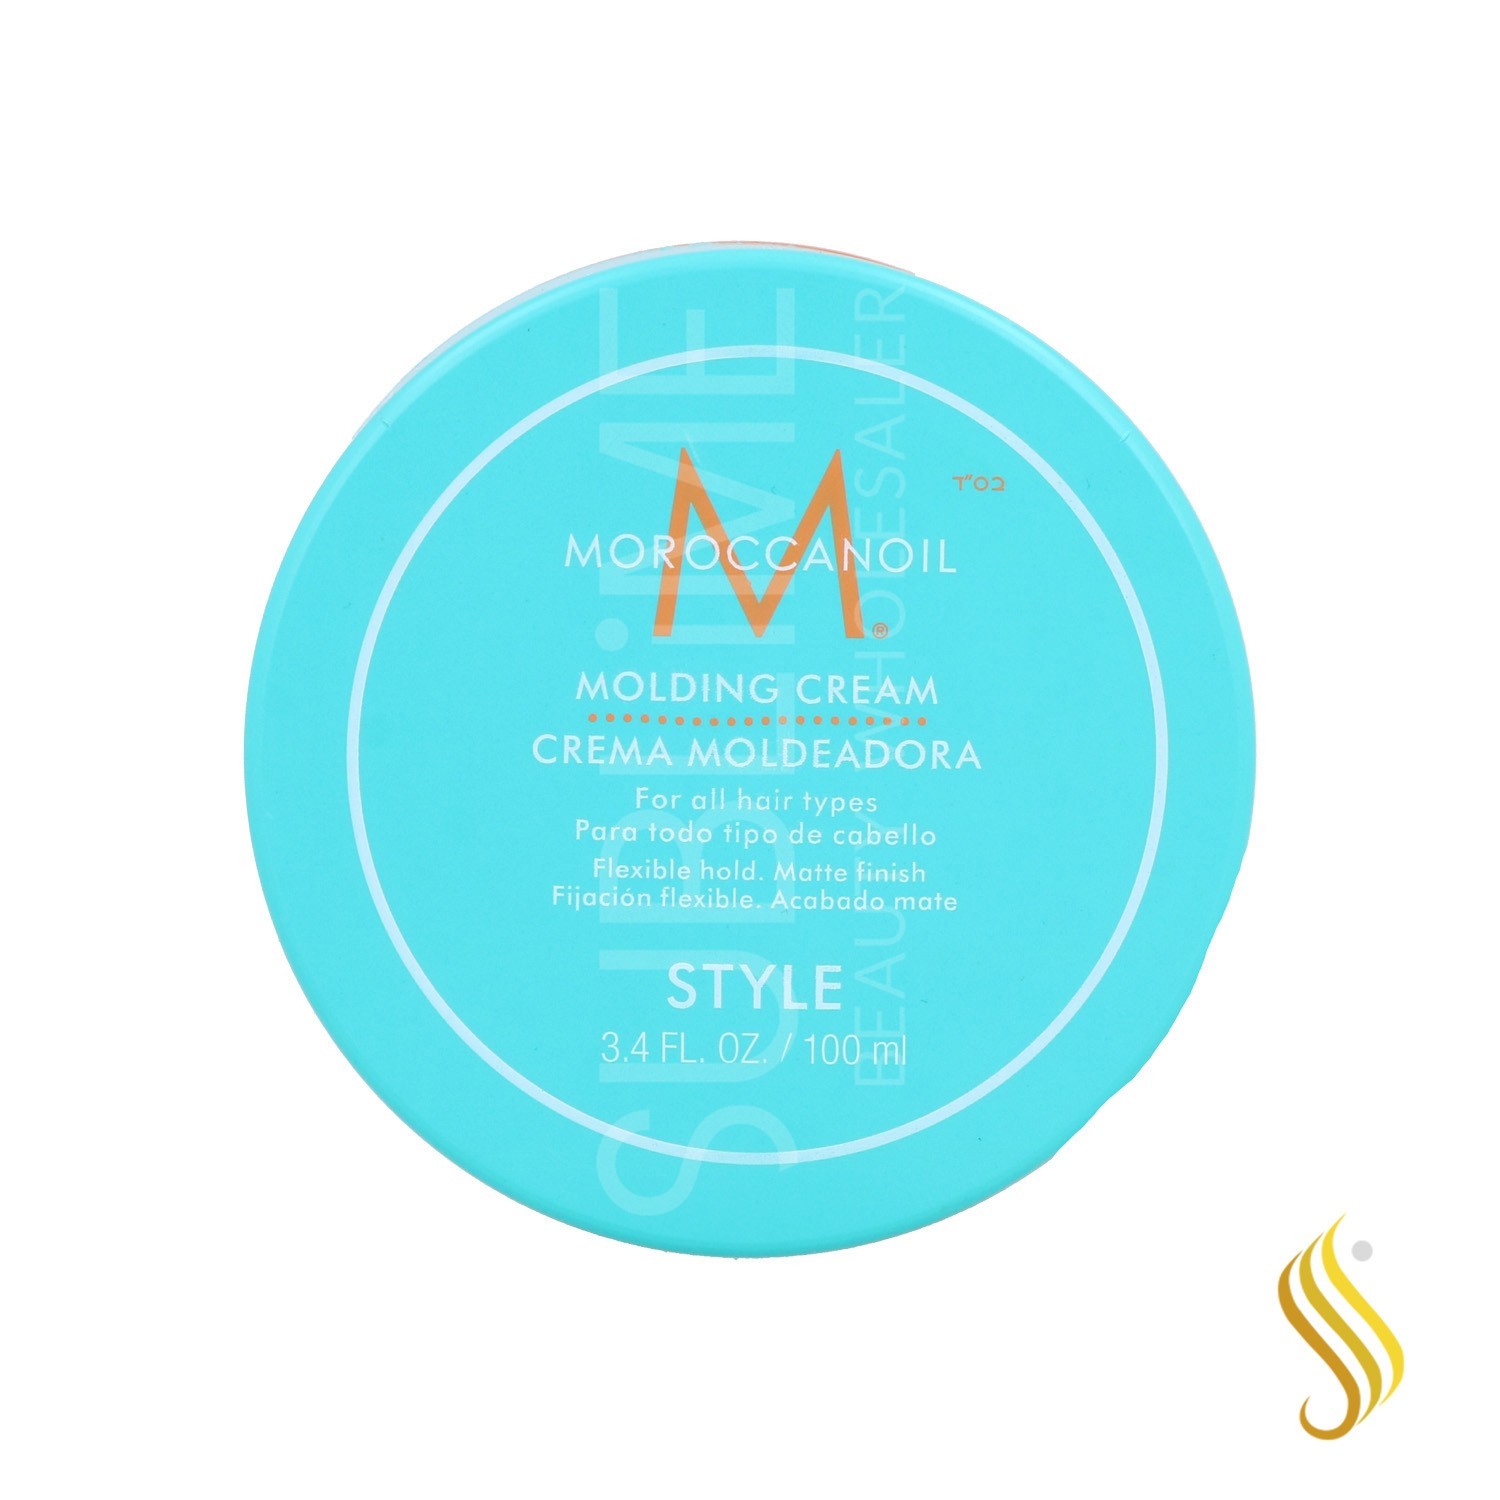 Moroccanoil Molding Cream 100 Ml (style)